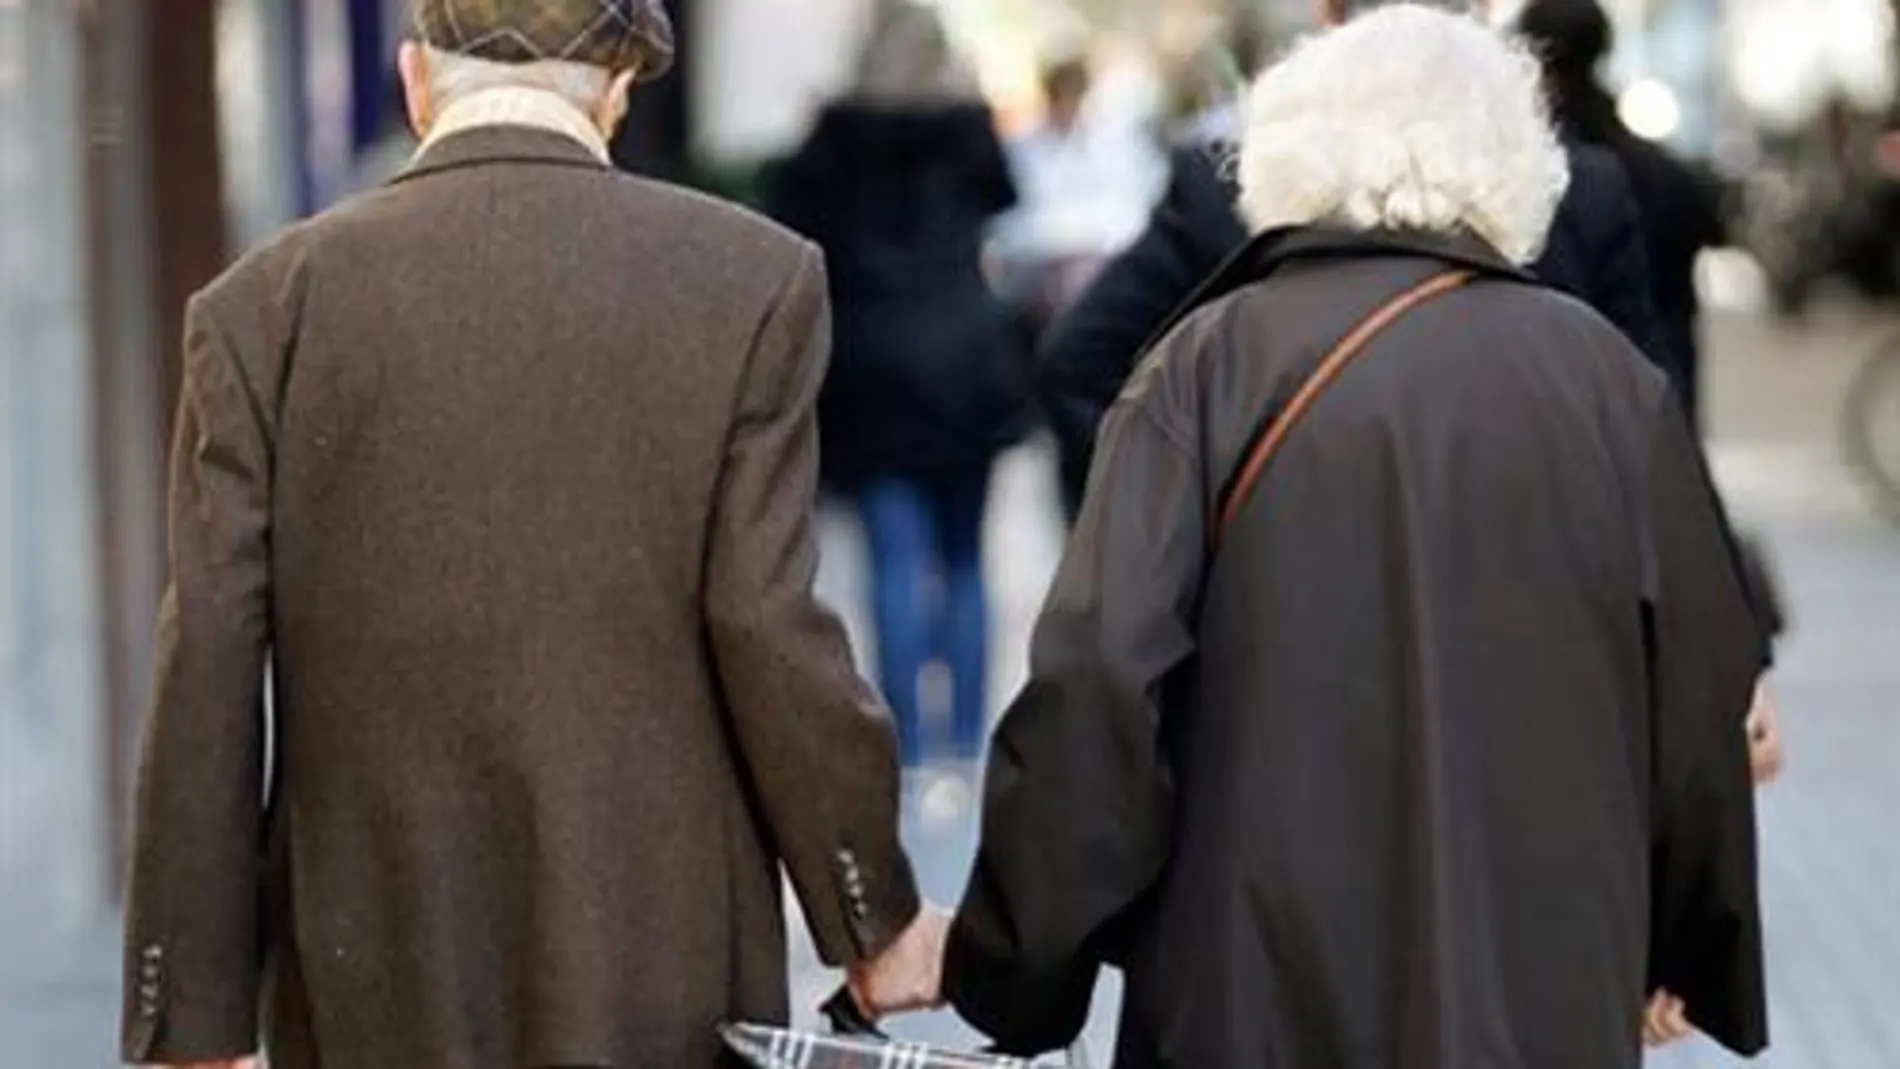 Los jubilados italianos en el extranjero tendrán que presentar una "prueba de vida" para cobrar la pensión